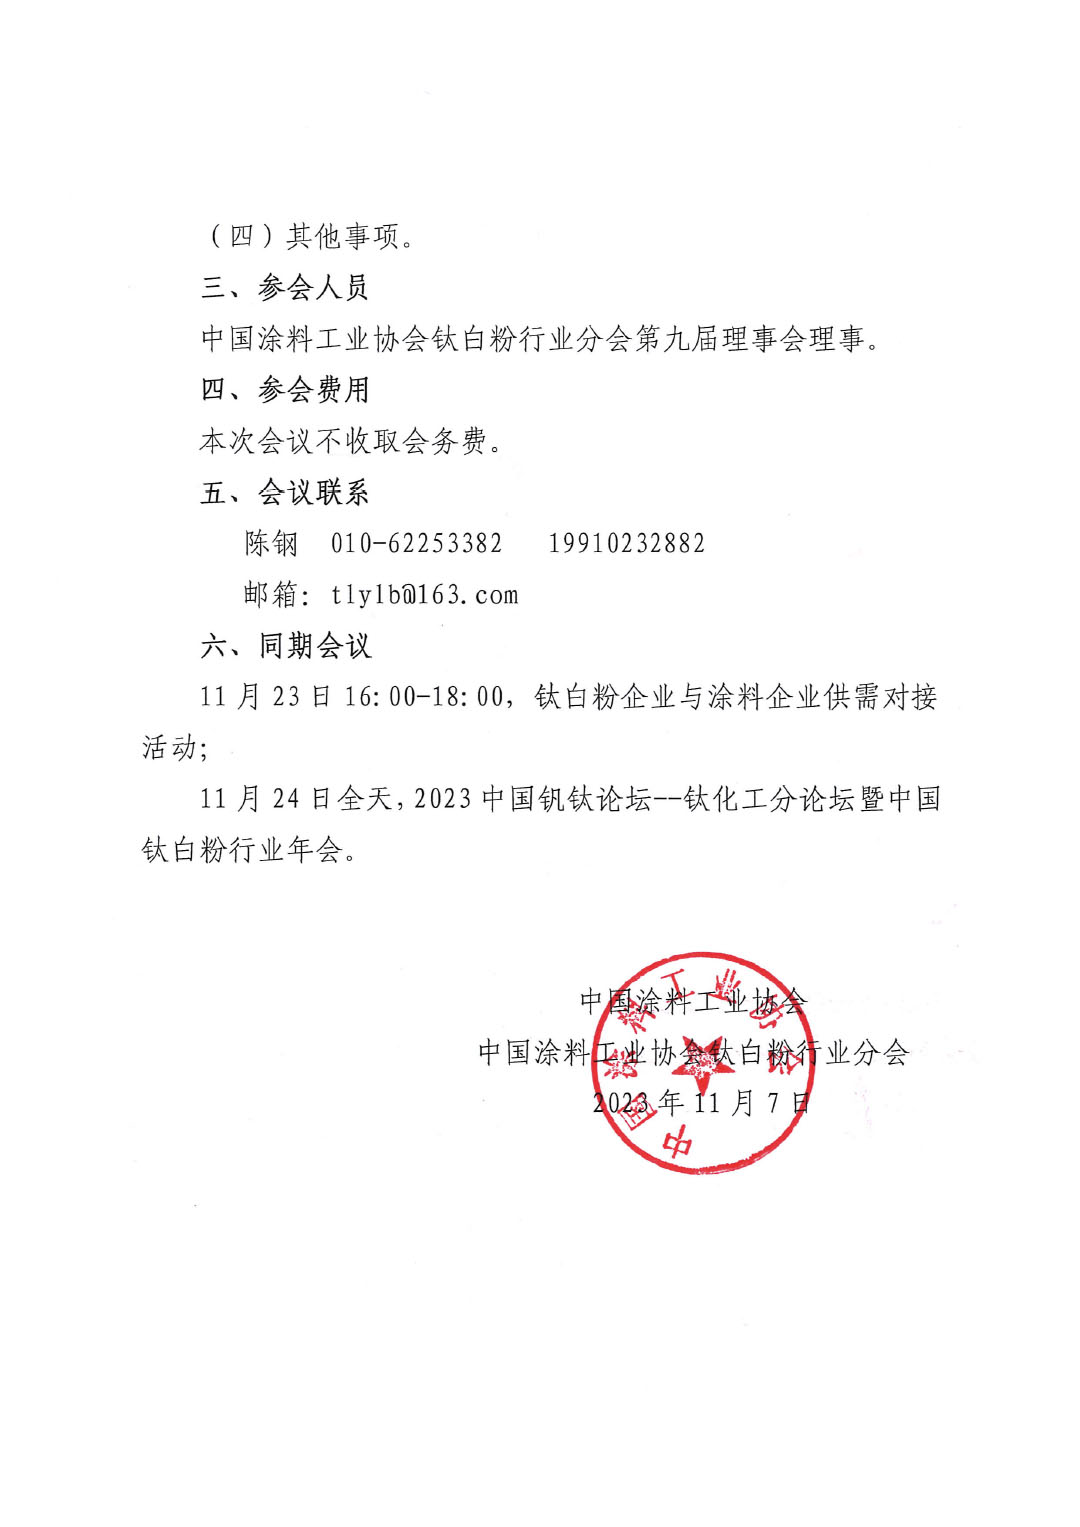 关于召开中国涂料工业协会钛白粉行业分会理事会的通知-2